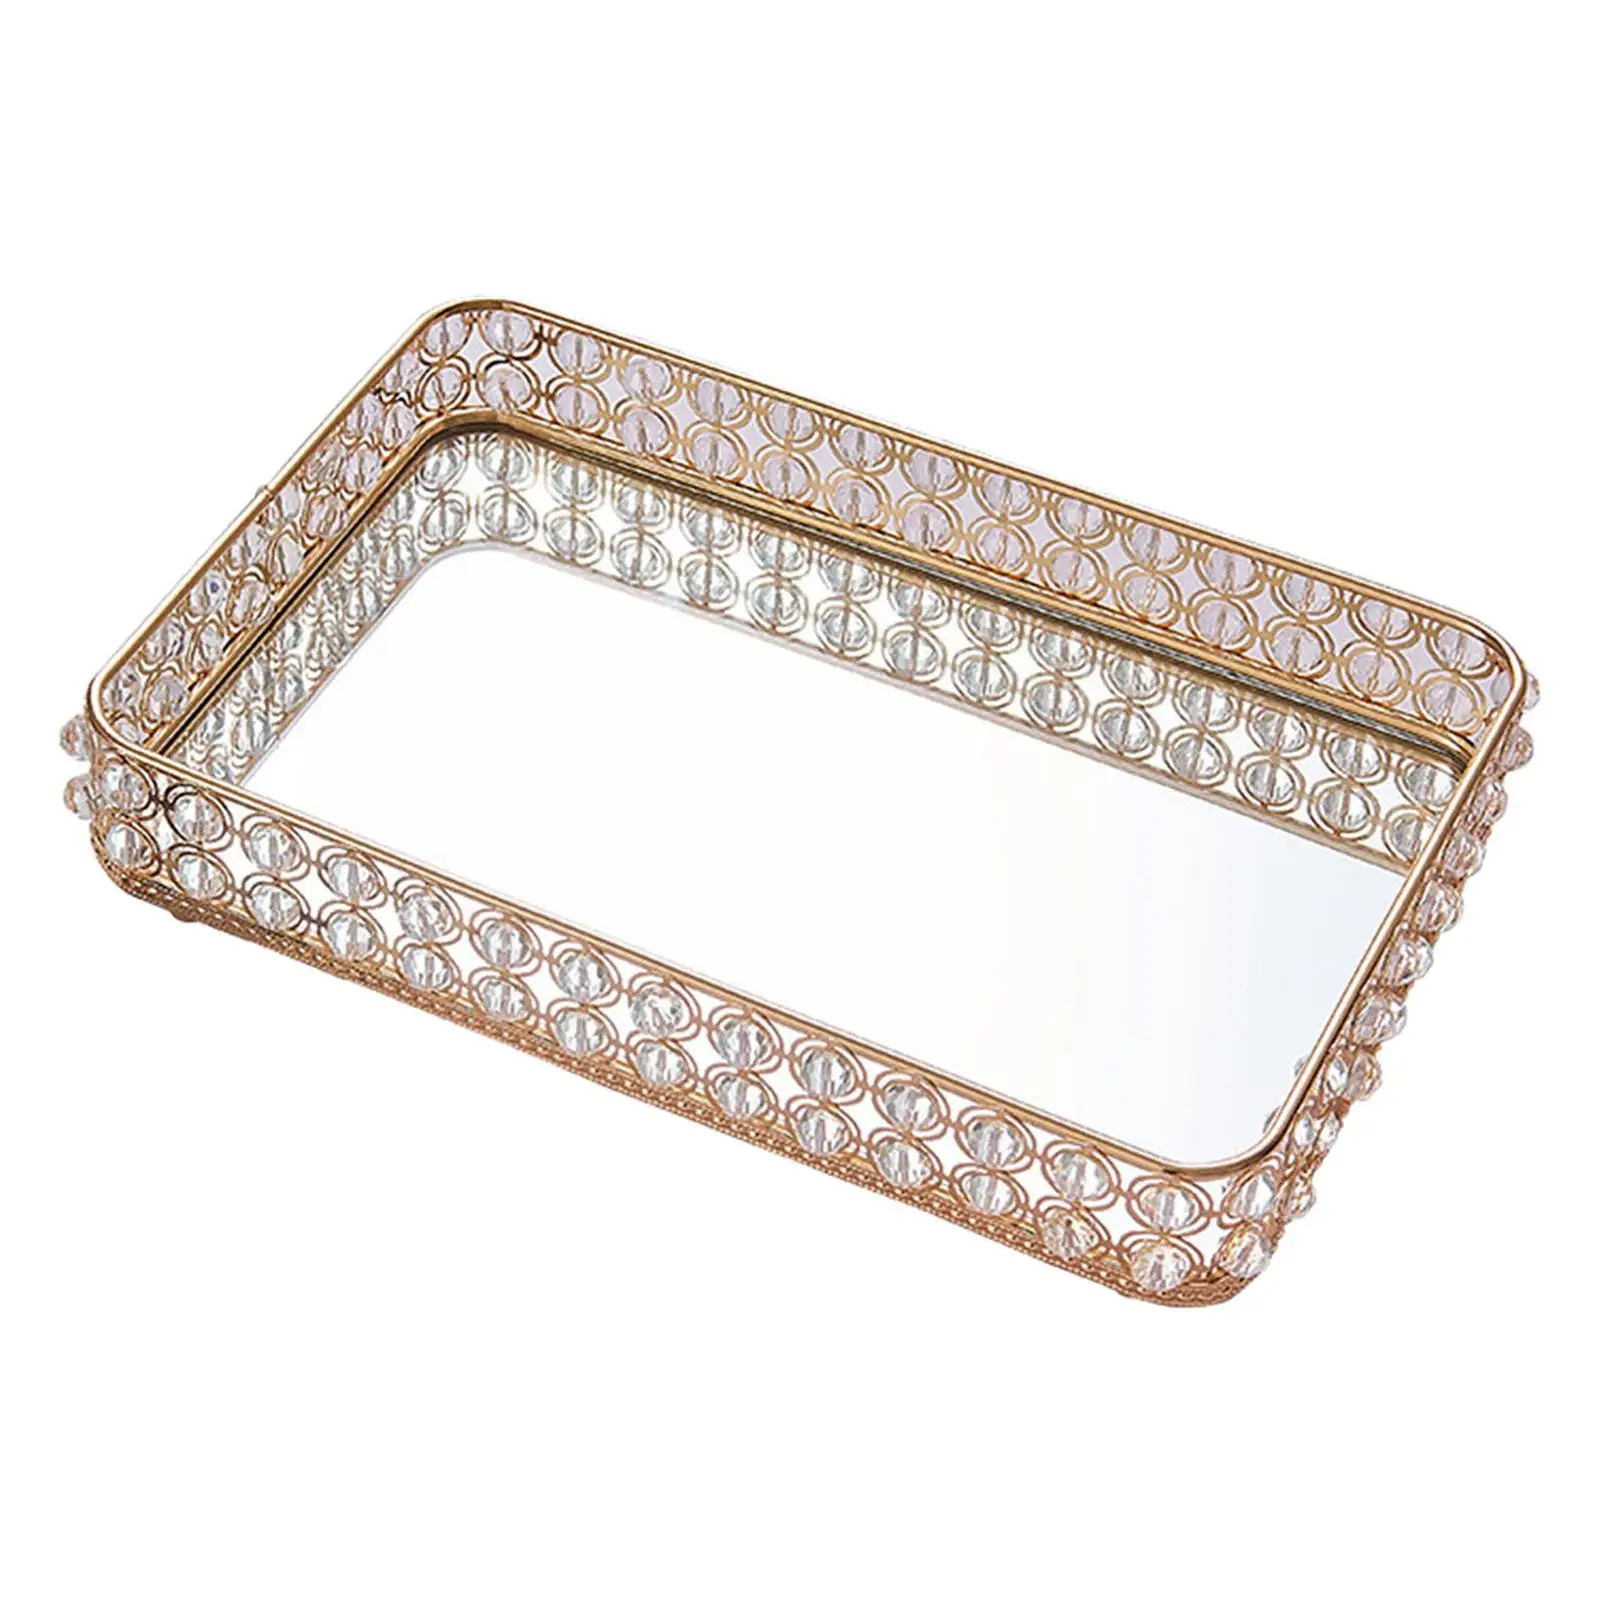 Mirrored Crystal Tray Organizer Decorative Tray 25Cmx15cm Perfume Tray Dresser Tray Bathroom Tray Rectangle Makeup Tray